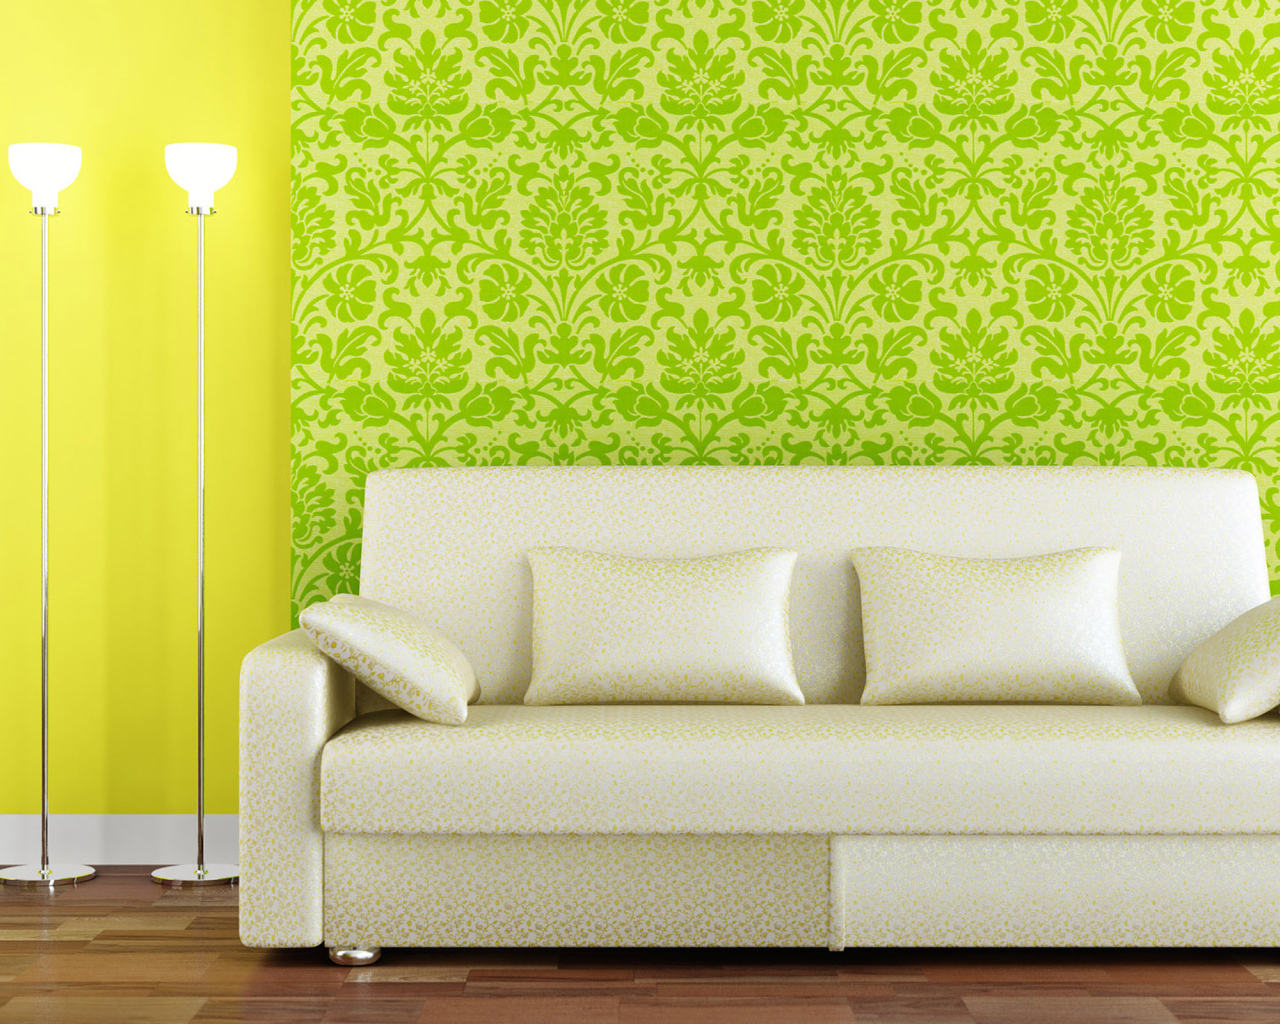 Белый диван на фоне зеленых обой